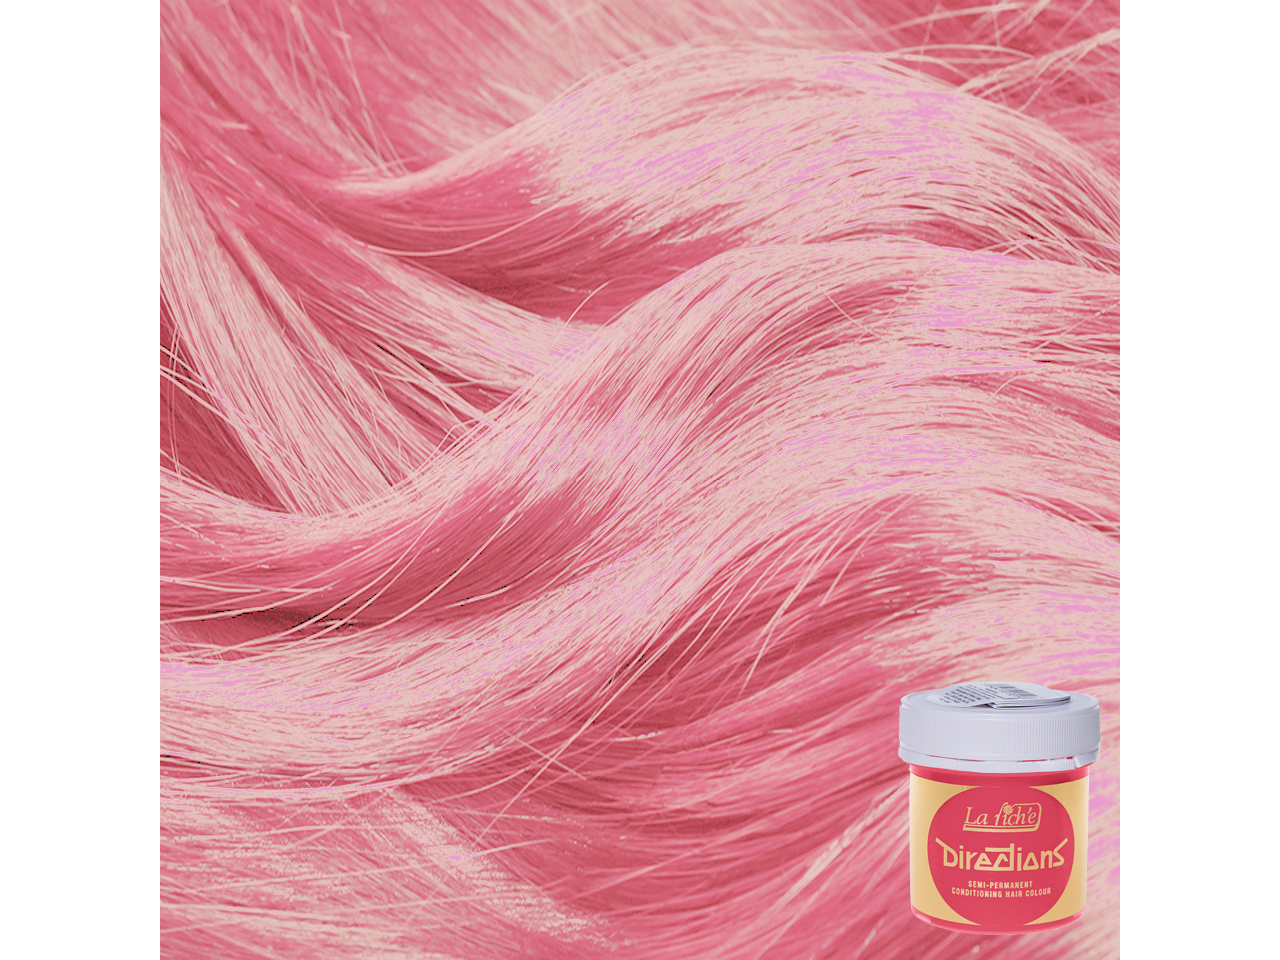 Купить розовую краску. La riche Directions Pastel Pink. Розовая краска для волос. Розовая краска для волос стойкая. Directions розовая краска для волос Pastel Rose.